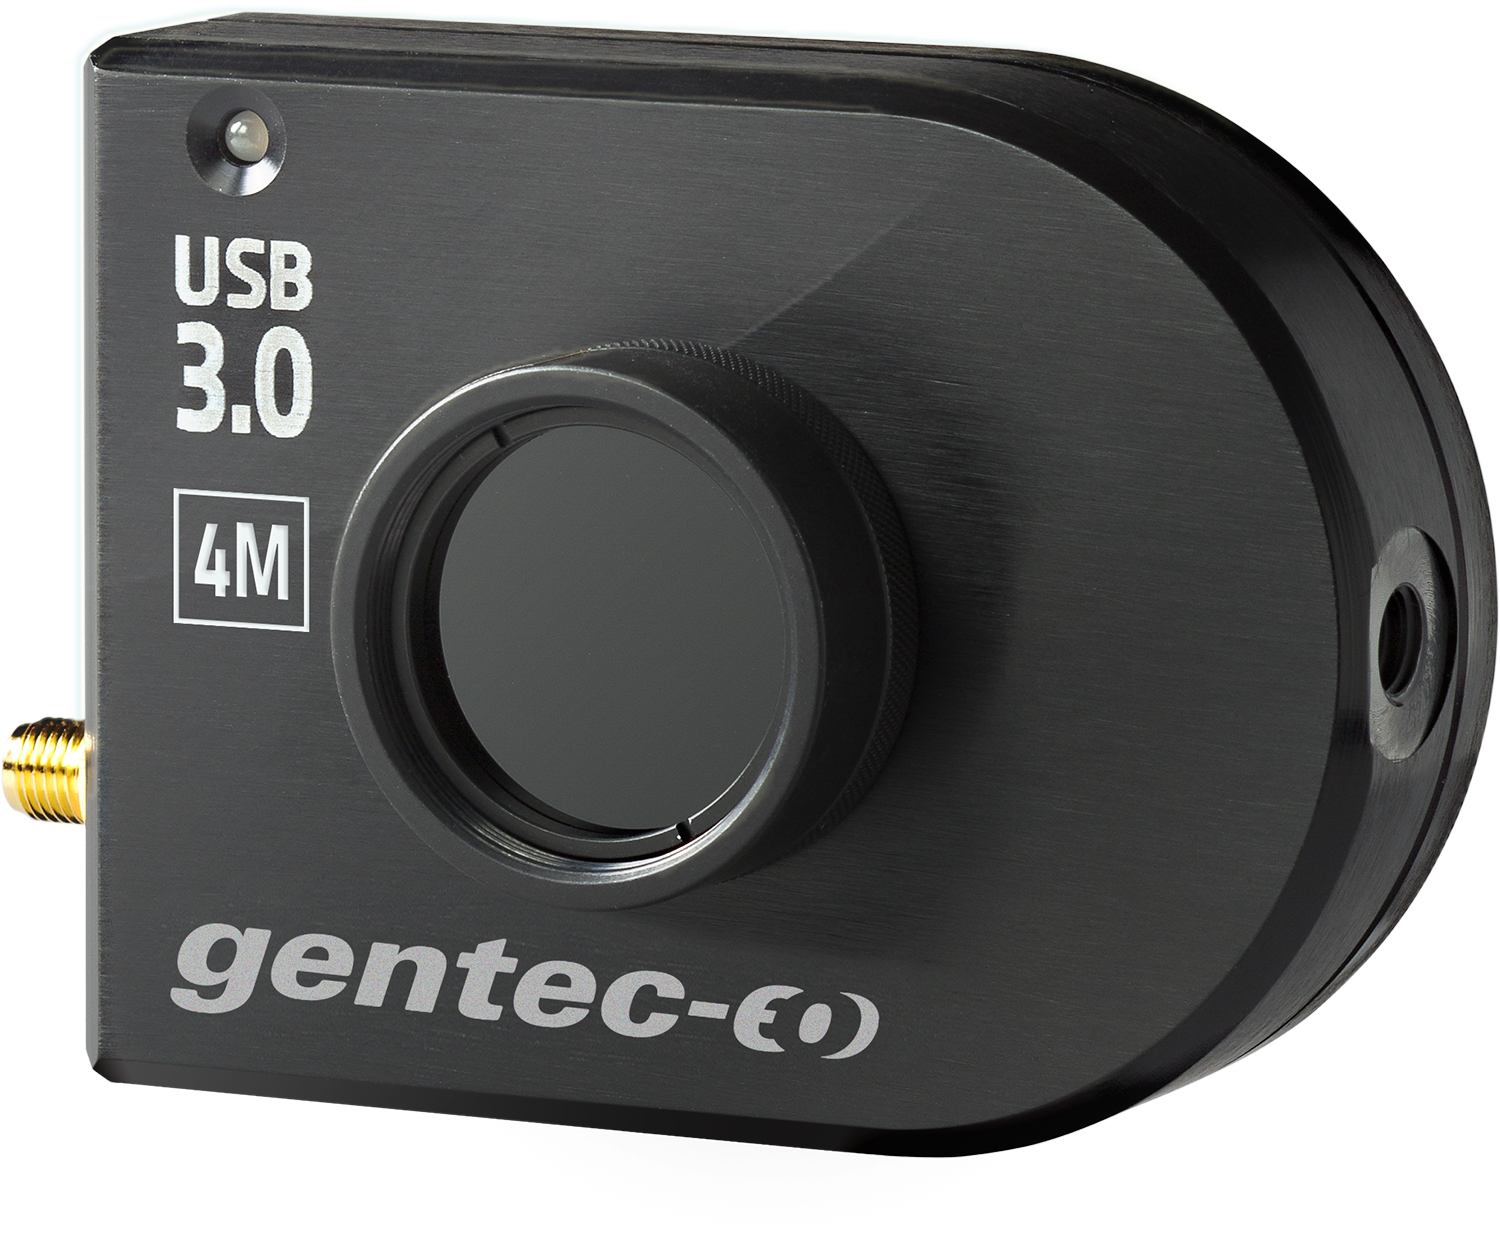 Gentec-EO - 激光光束轮廓仪 - Beamage-4M 光束分析仪